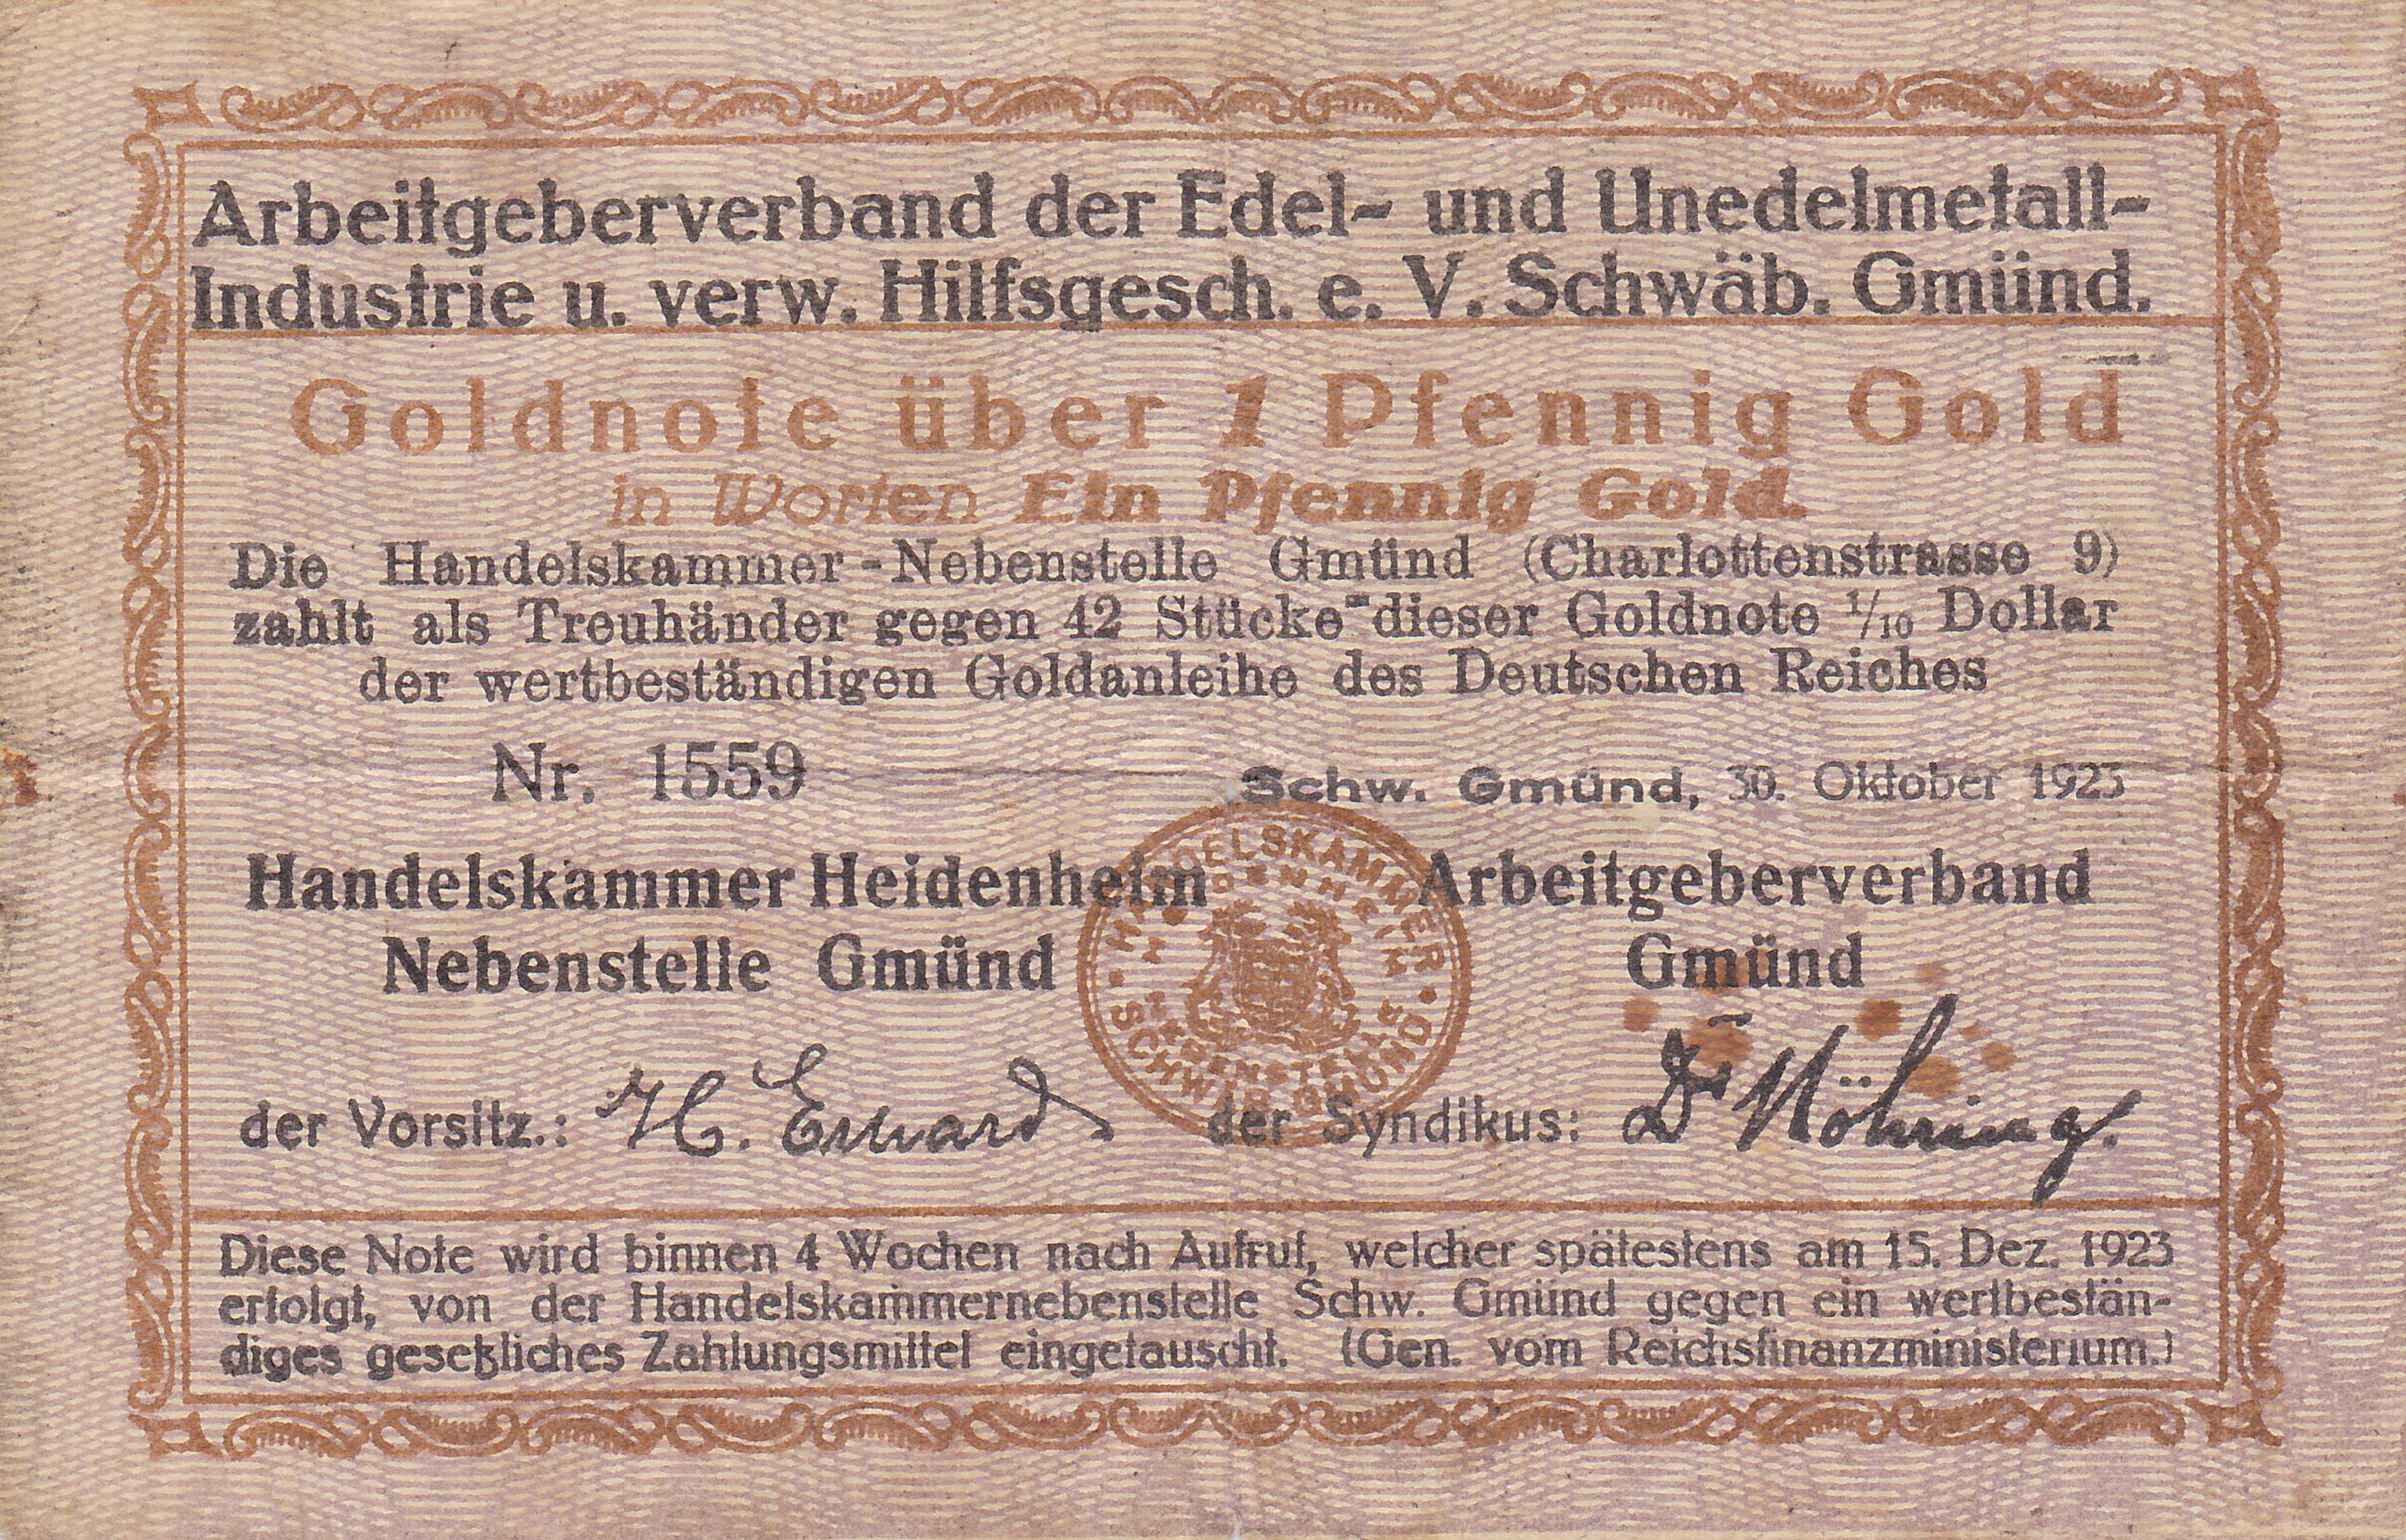 Leider kein Bild von 1 Pfennig Gold vom 30.10.1923